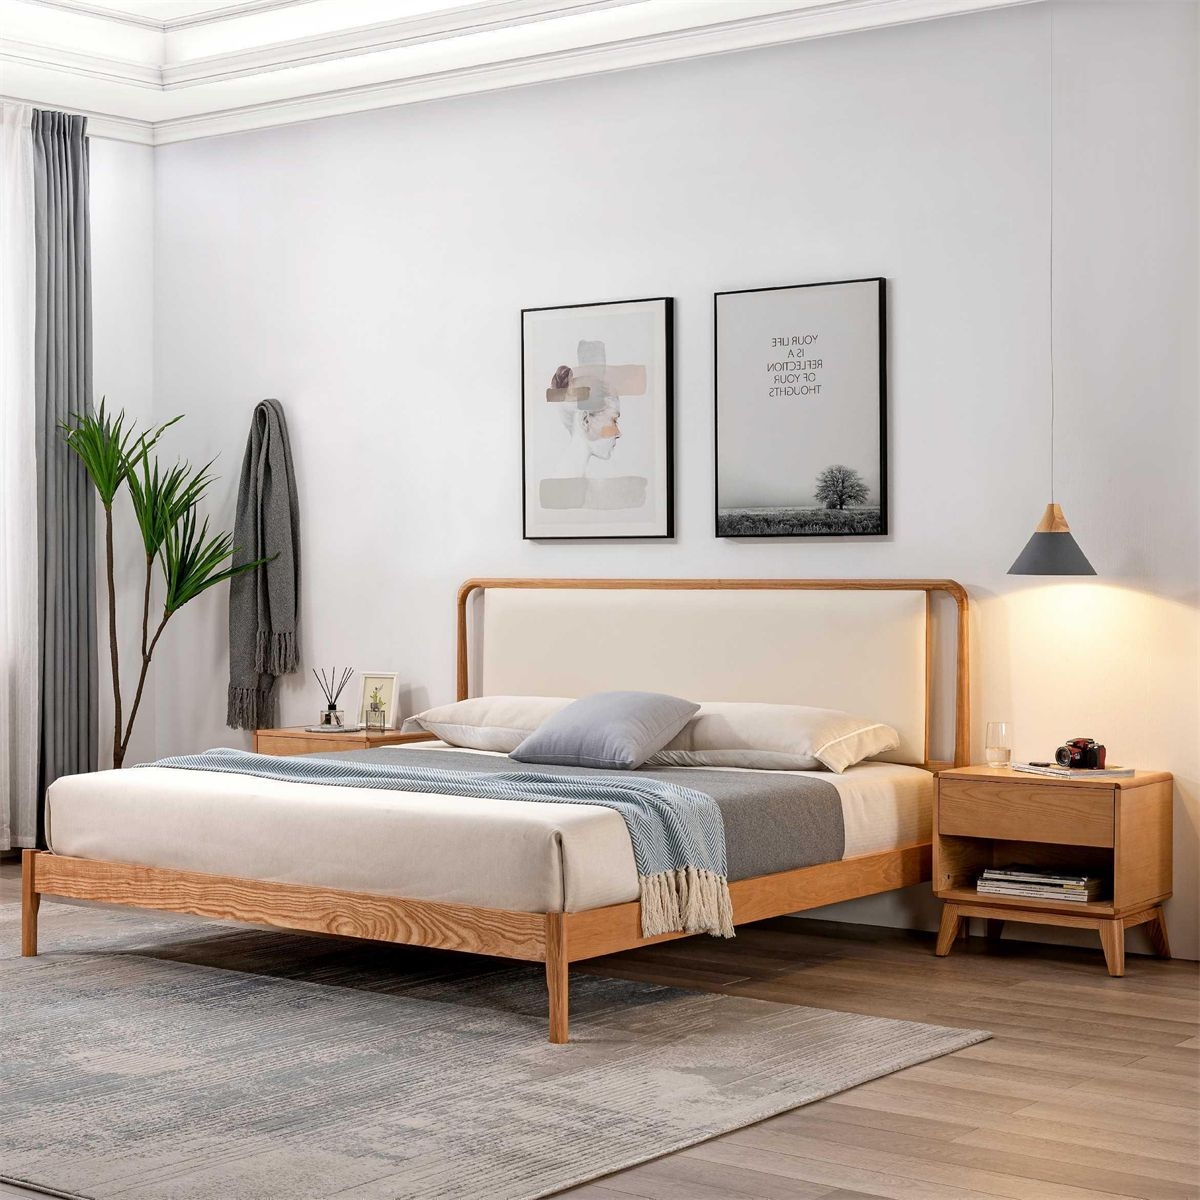 【华戴北欧】北欧原木色白蜡木系列   家用实木原木色大床公寓双人床